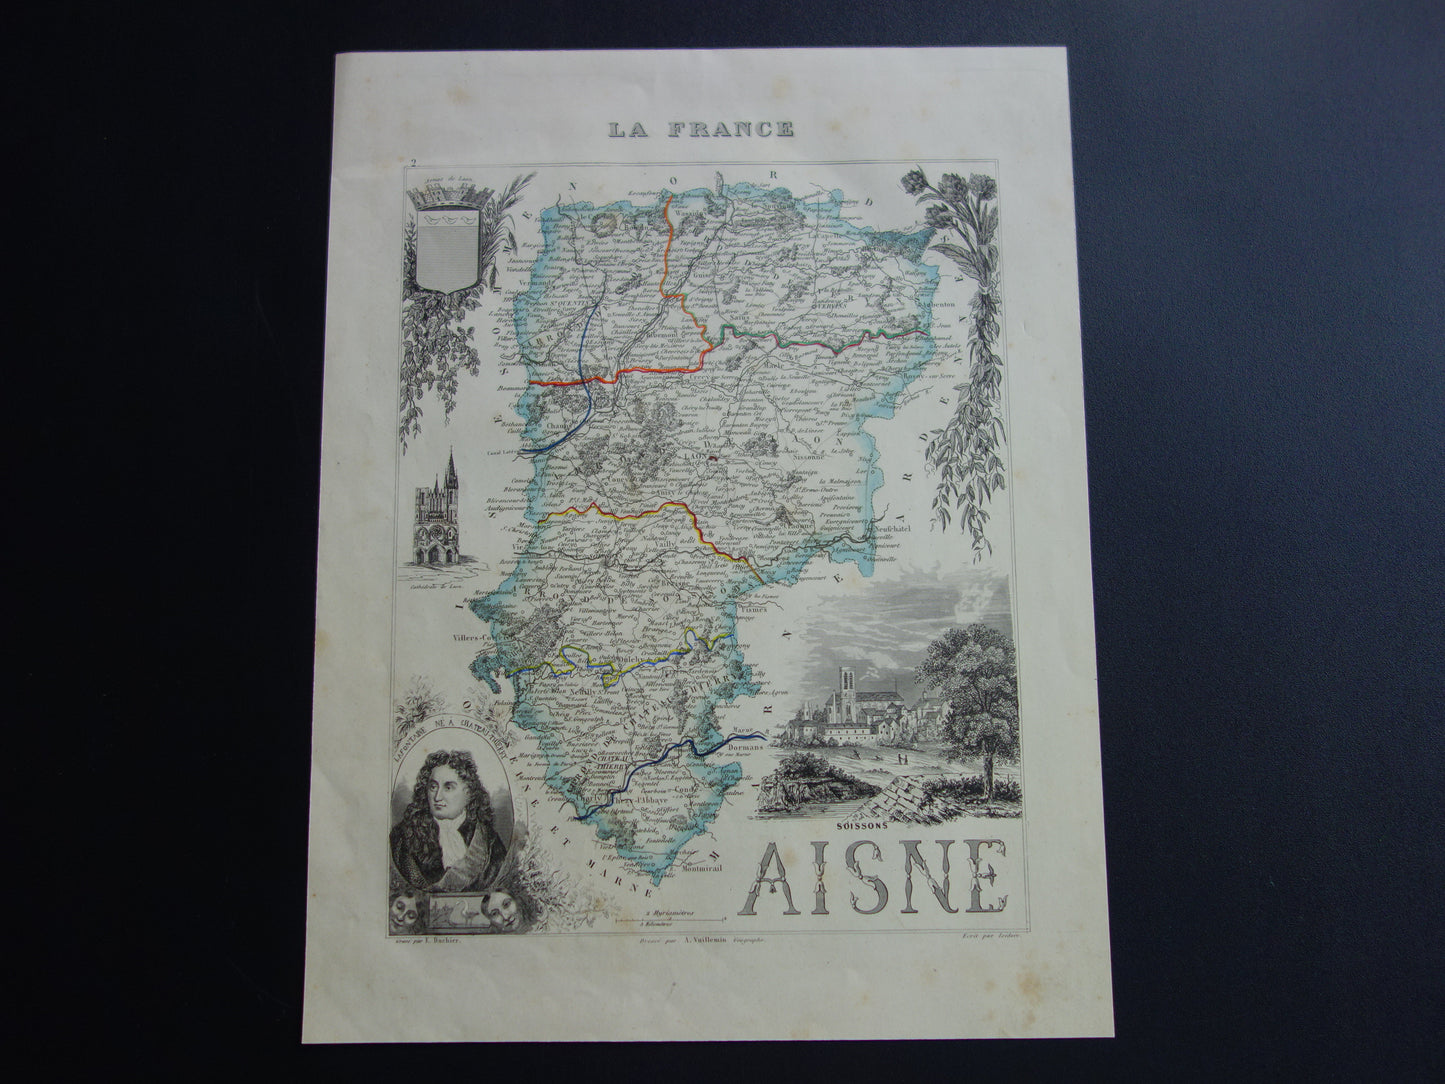 Oude kaart van AISNE departement in Frankrijk uit 1851 originele antieke handgekleurde landkaart Laon Soissons Saint-Quentin